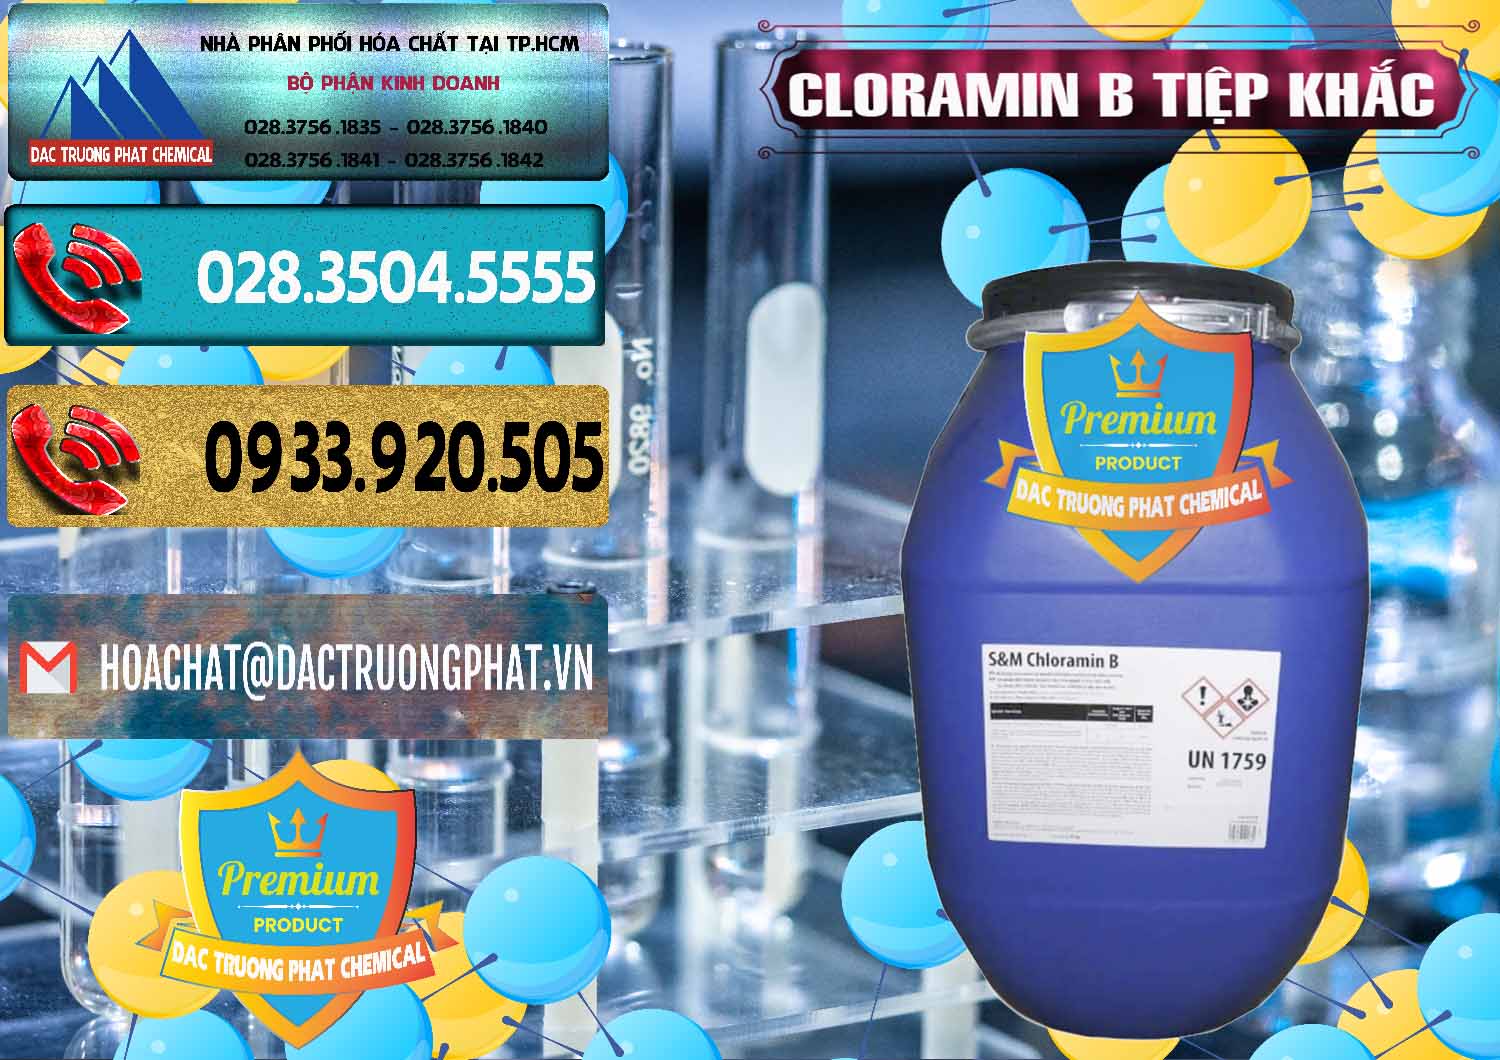 Nơi bán - cung ứng Cloramin B Cộng Hòa Séc Tiệp Khắc Czech Republic - 0299 - Bán & phân phối hóa chất tại TP.HCM - hoachatdetnhuom.com